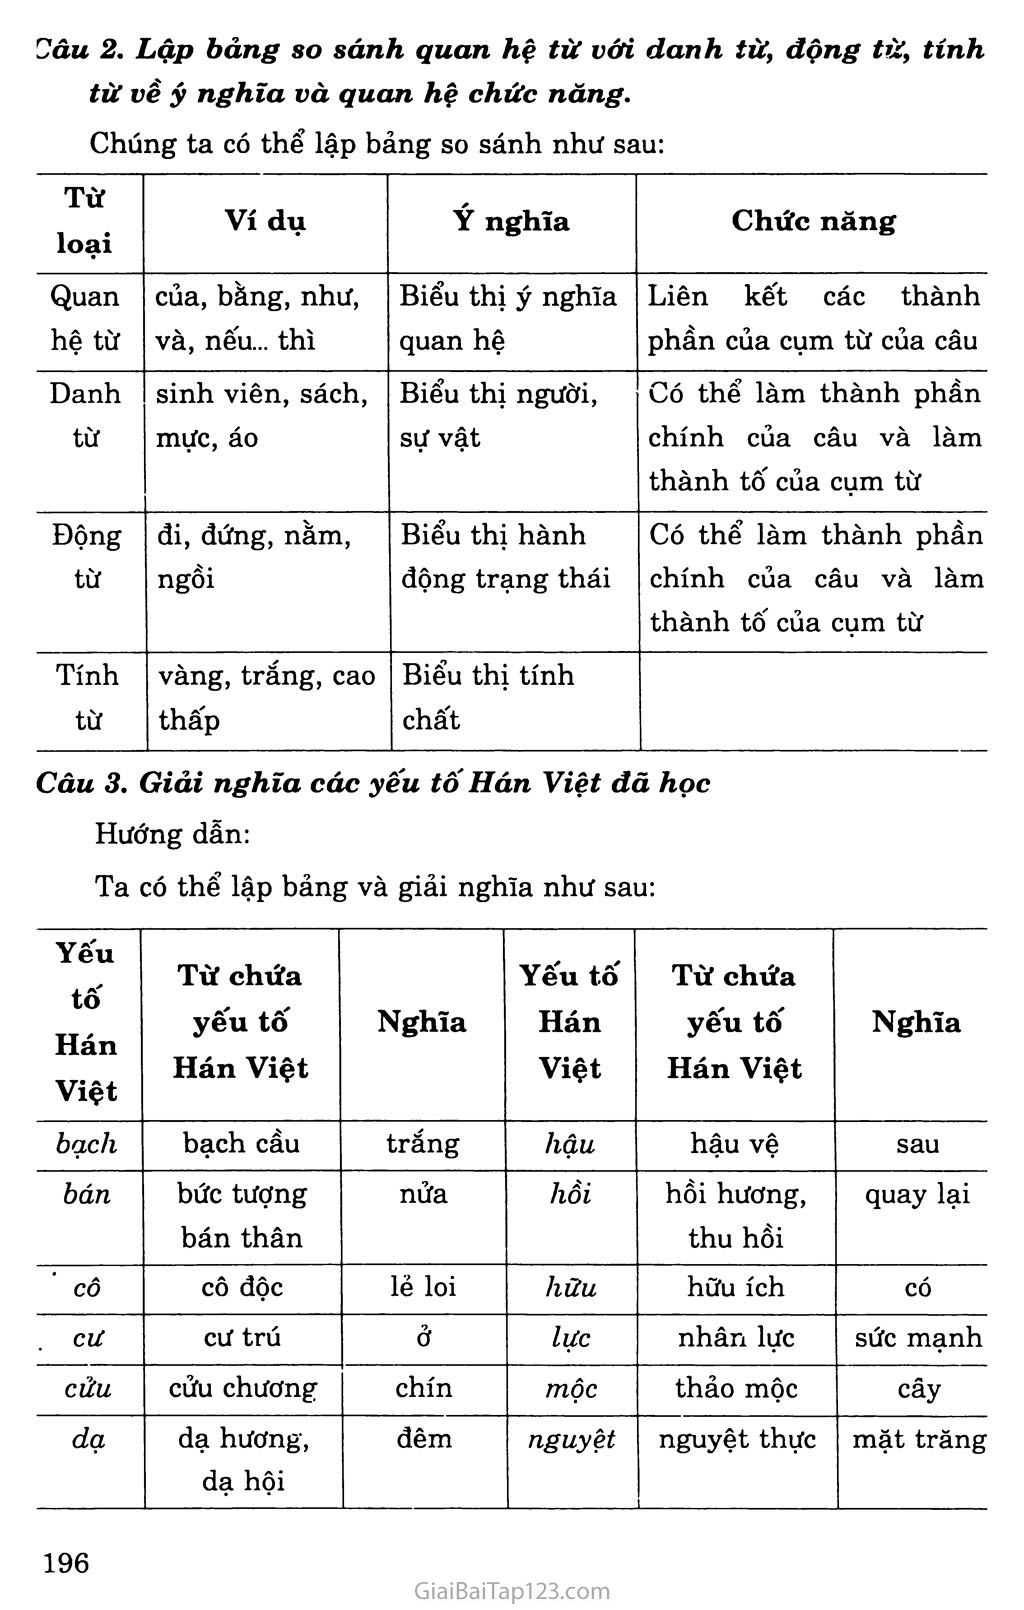 Ôn tập phần Tiếng Việt trang 2